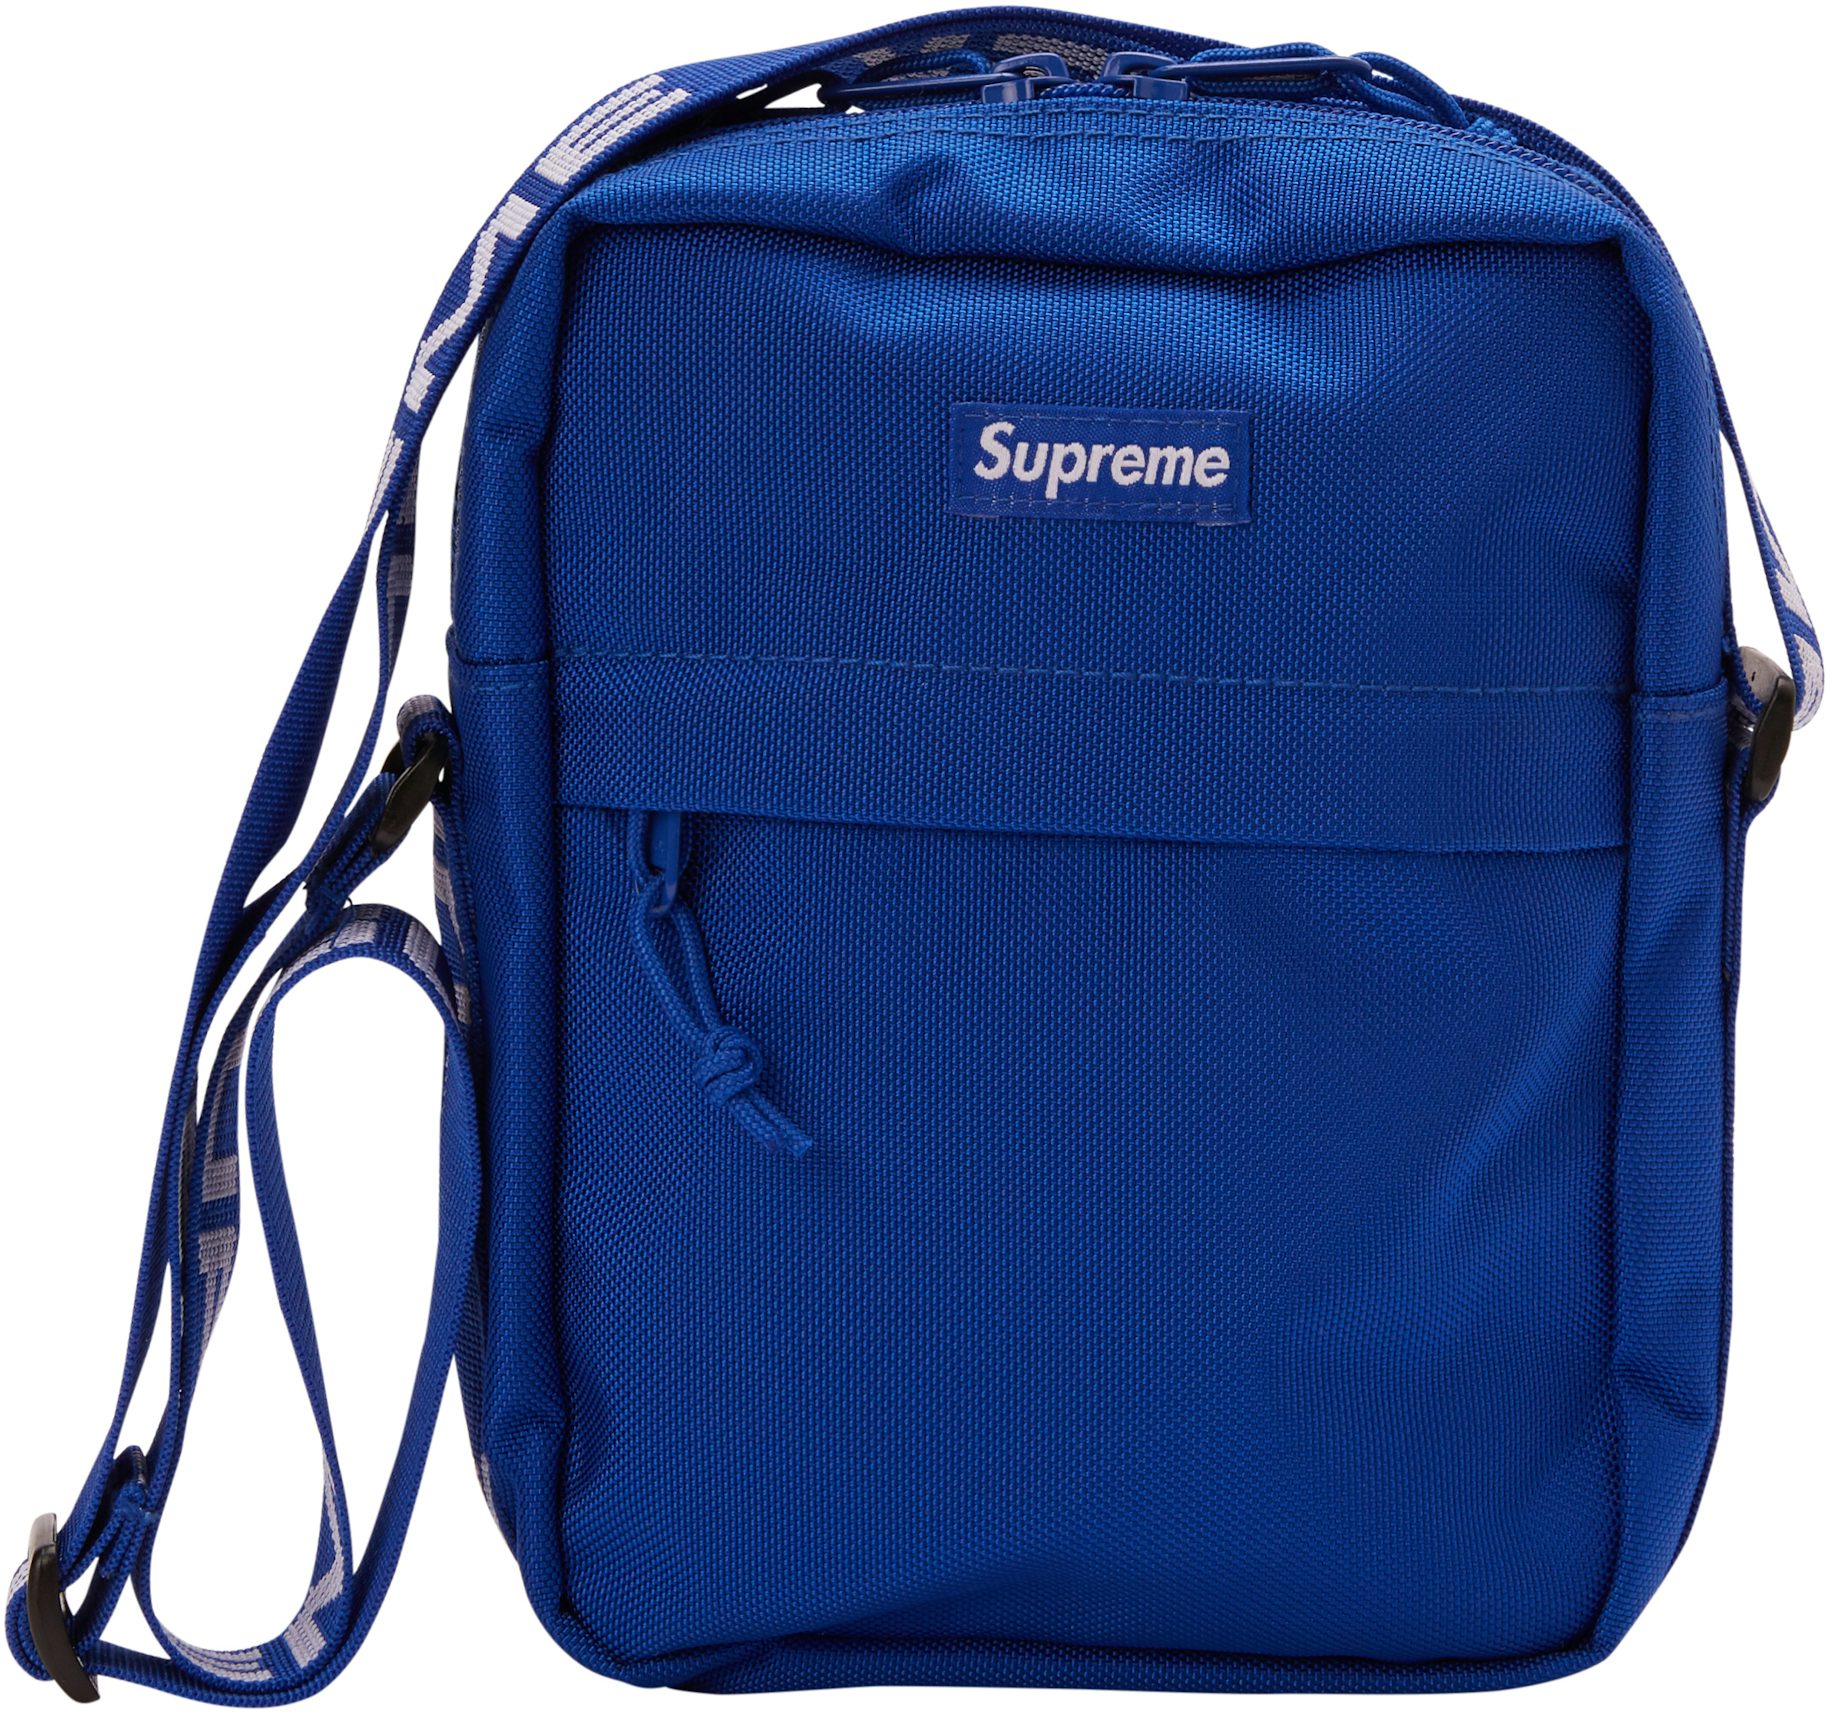 Supreme Shoulder Bag, Red (SS18)